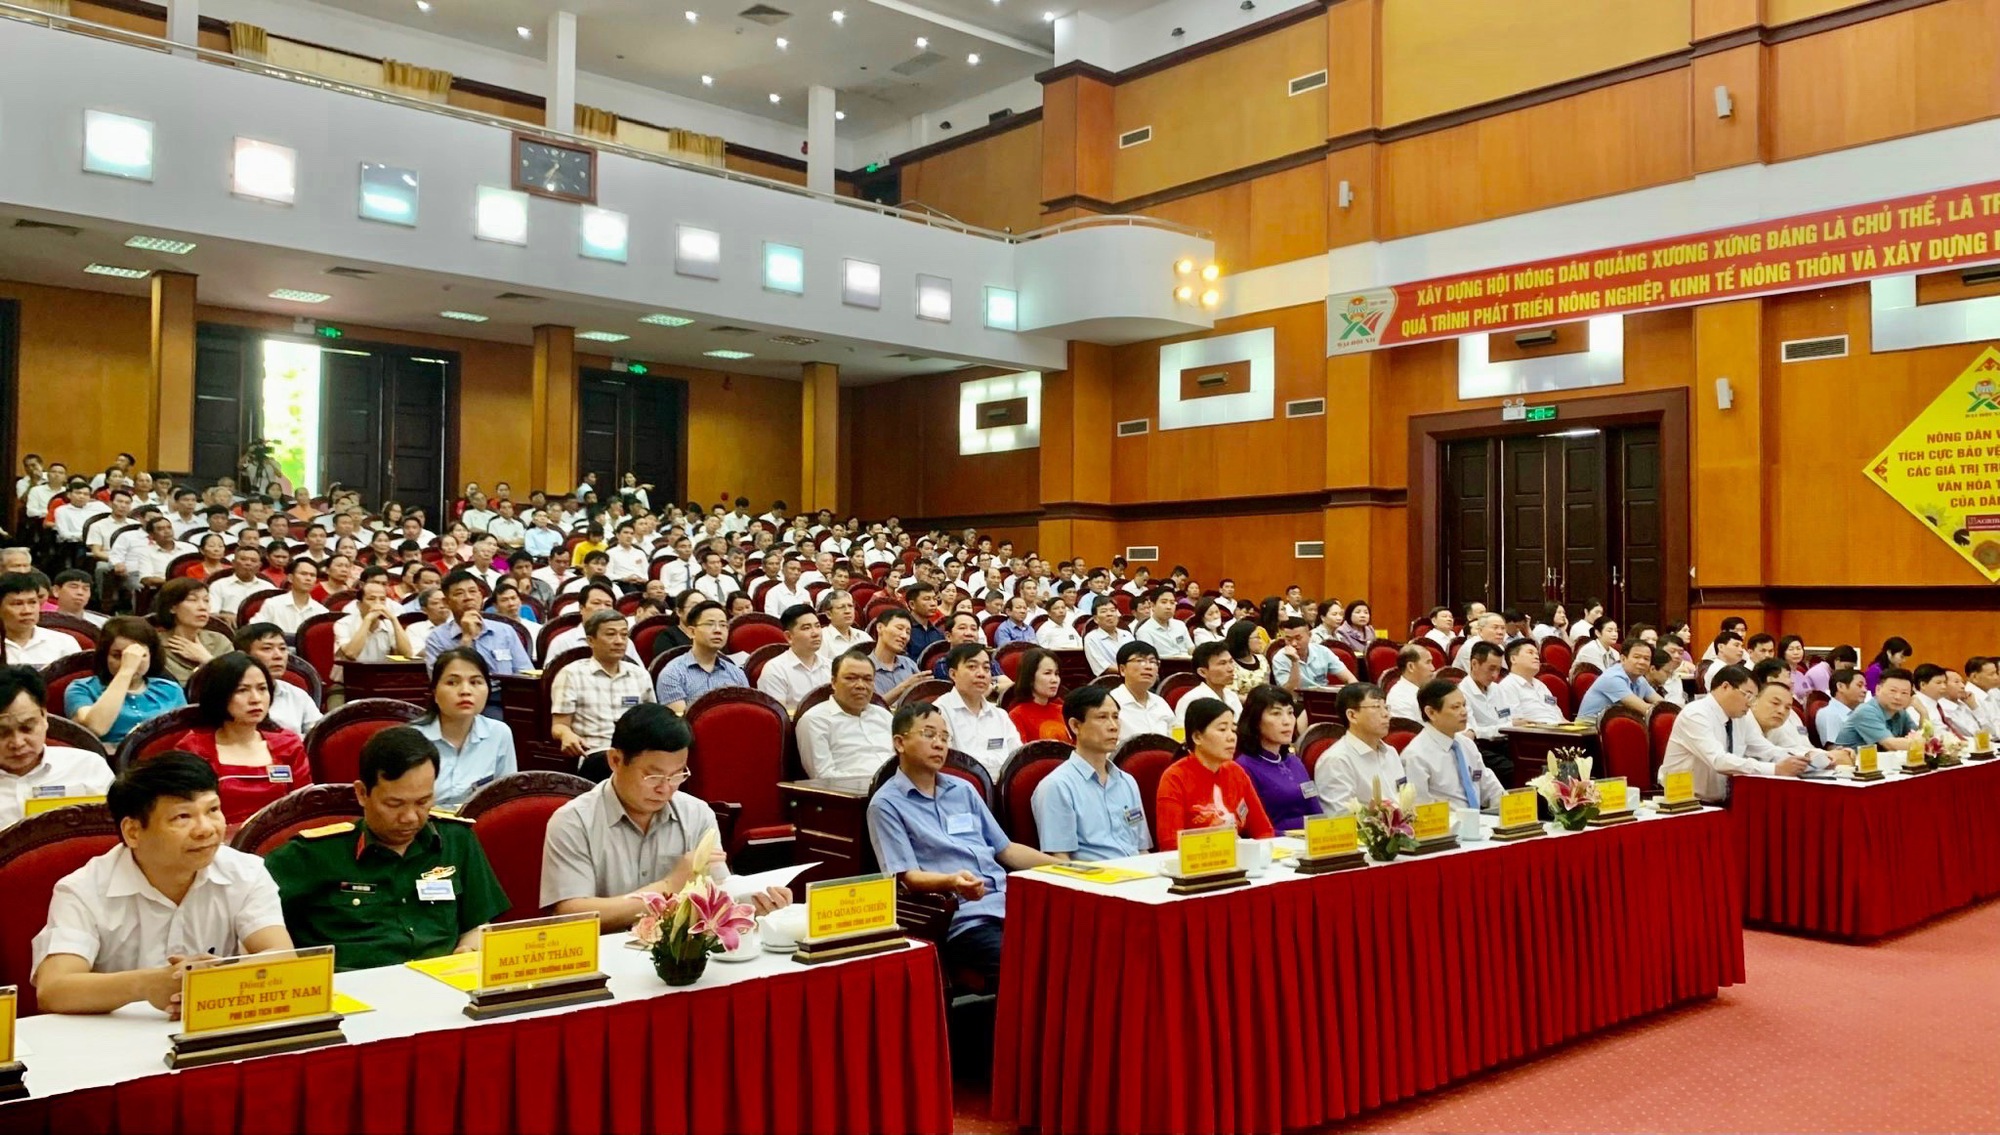  Đại hội đại biểu Hội Nông dân huyện Quảng Xương, ông Nguyễn Văn Linh tái đắc cử chức Chủ tịch - Ảnh 1.